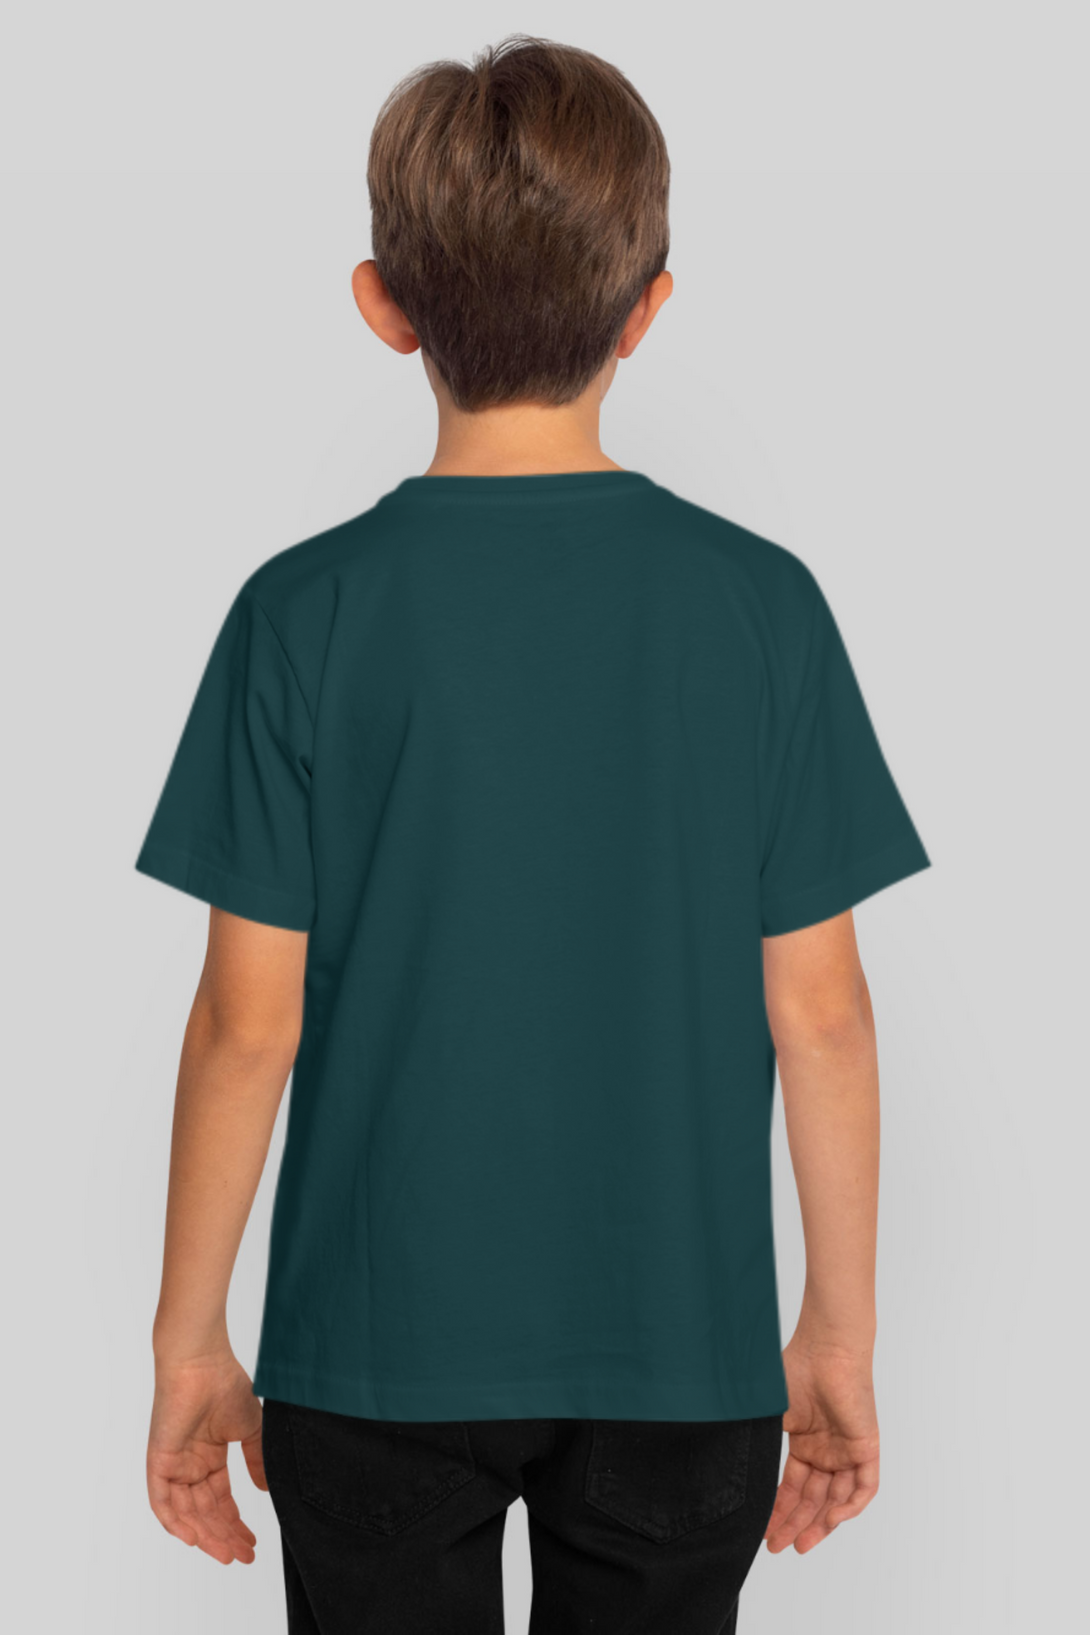 Petrol Blue T-Shirt For Boy - WowWaves - 2